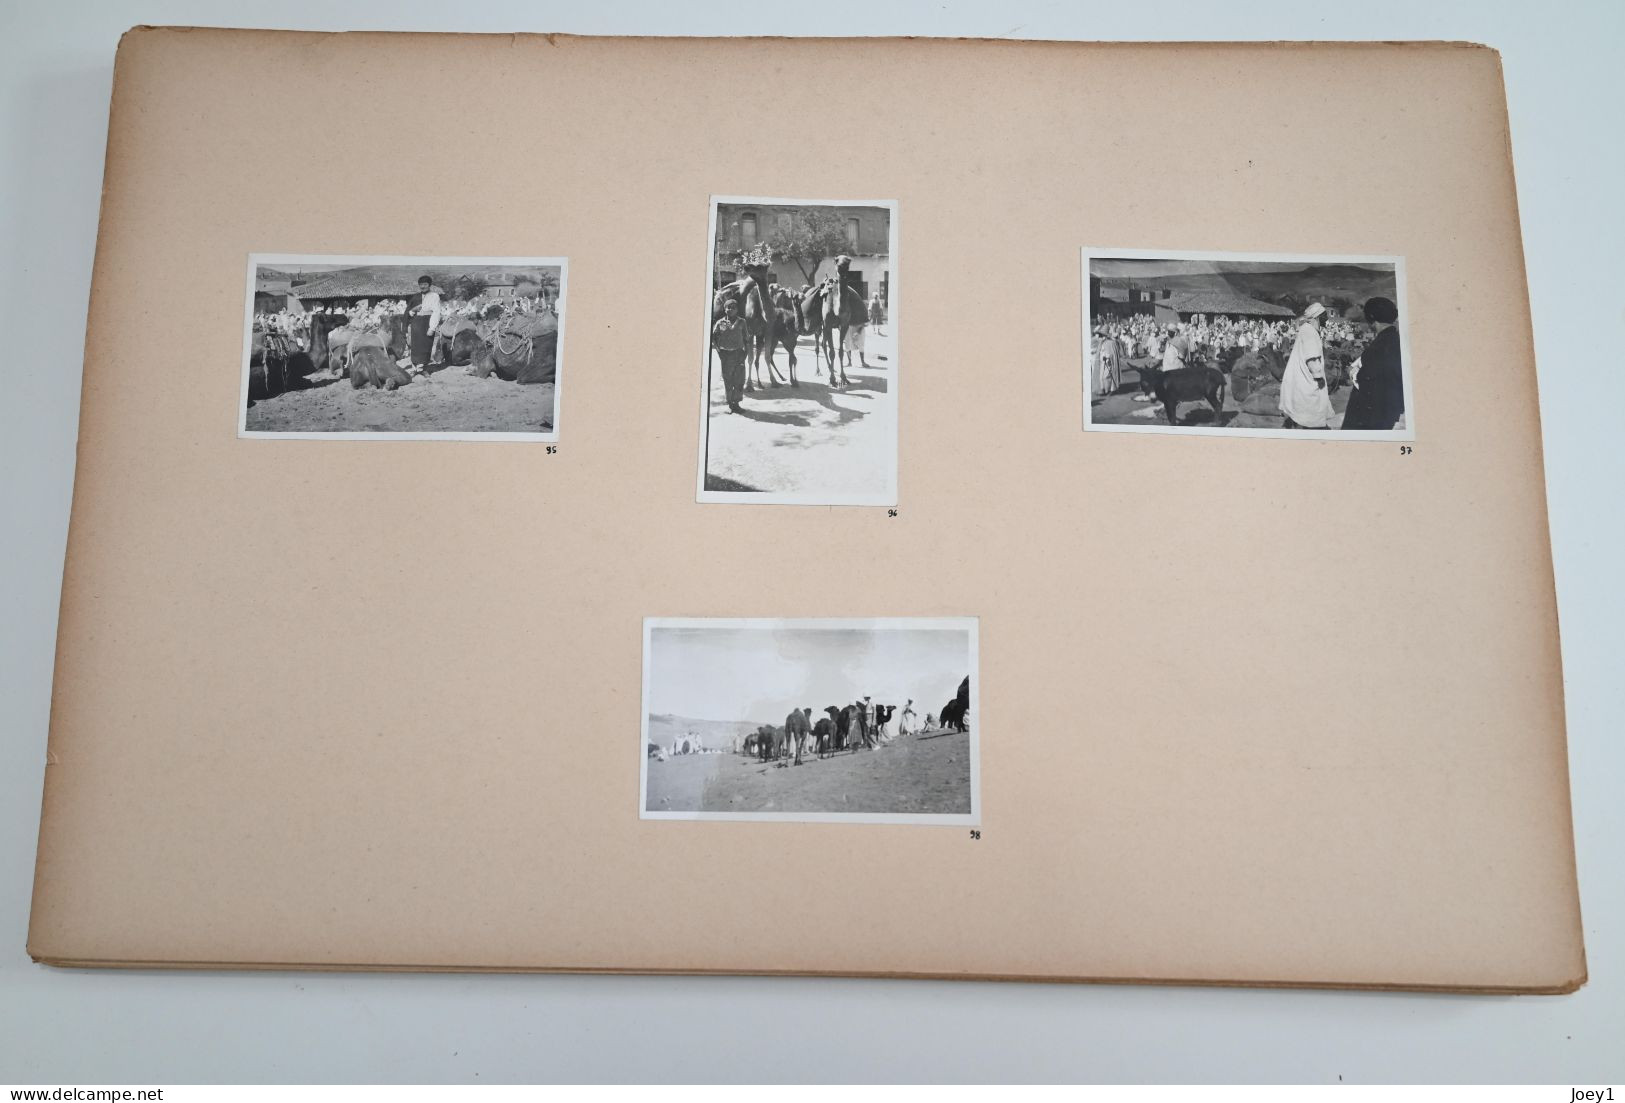 Carnet de voyage en Algérie 1932 Dessins gouaches Photos Cartes postales, présenté en Portfolio, planche format 50/32